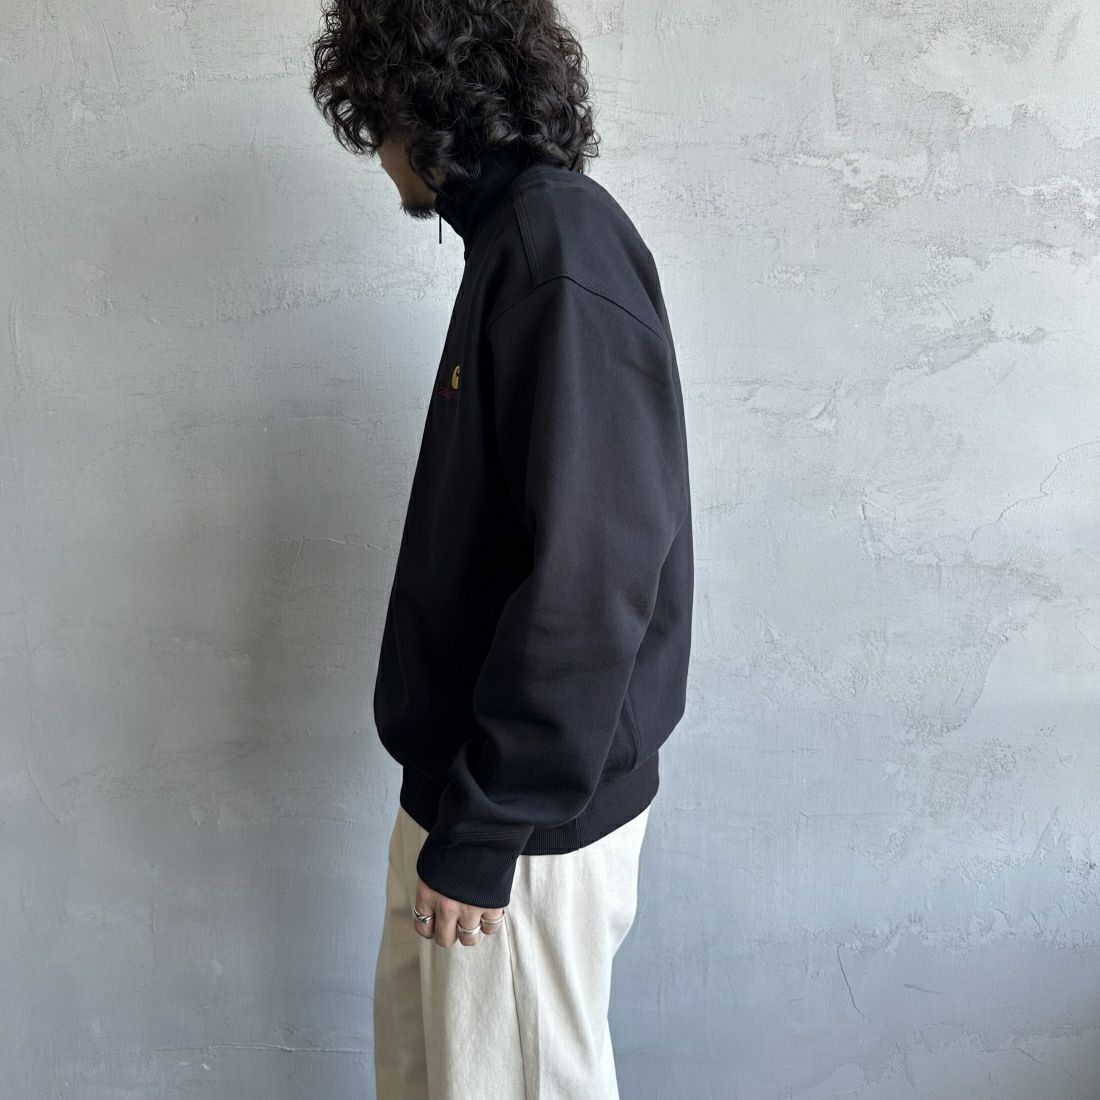 carhartt WIP [カーハートダブリューアイピー] ハーフジップアメリカンスクリプトスウェットシャツ [I027014] BLACK&&モデル身長：173cm 着用サイズ：M&&